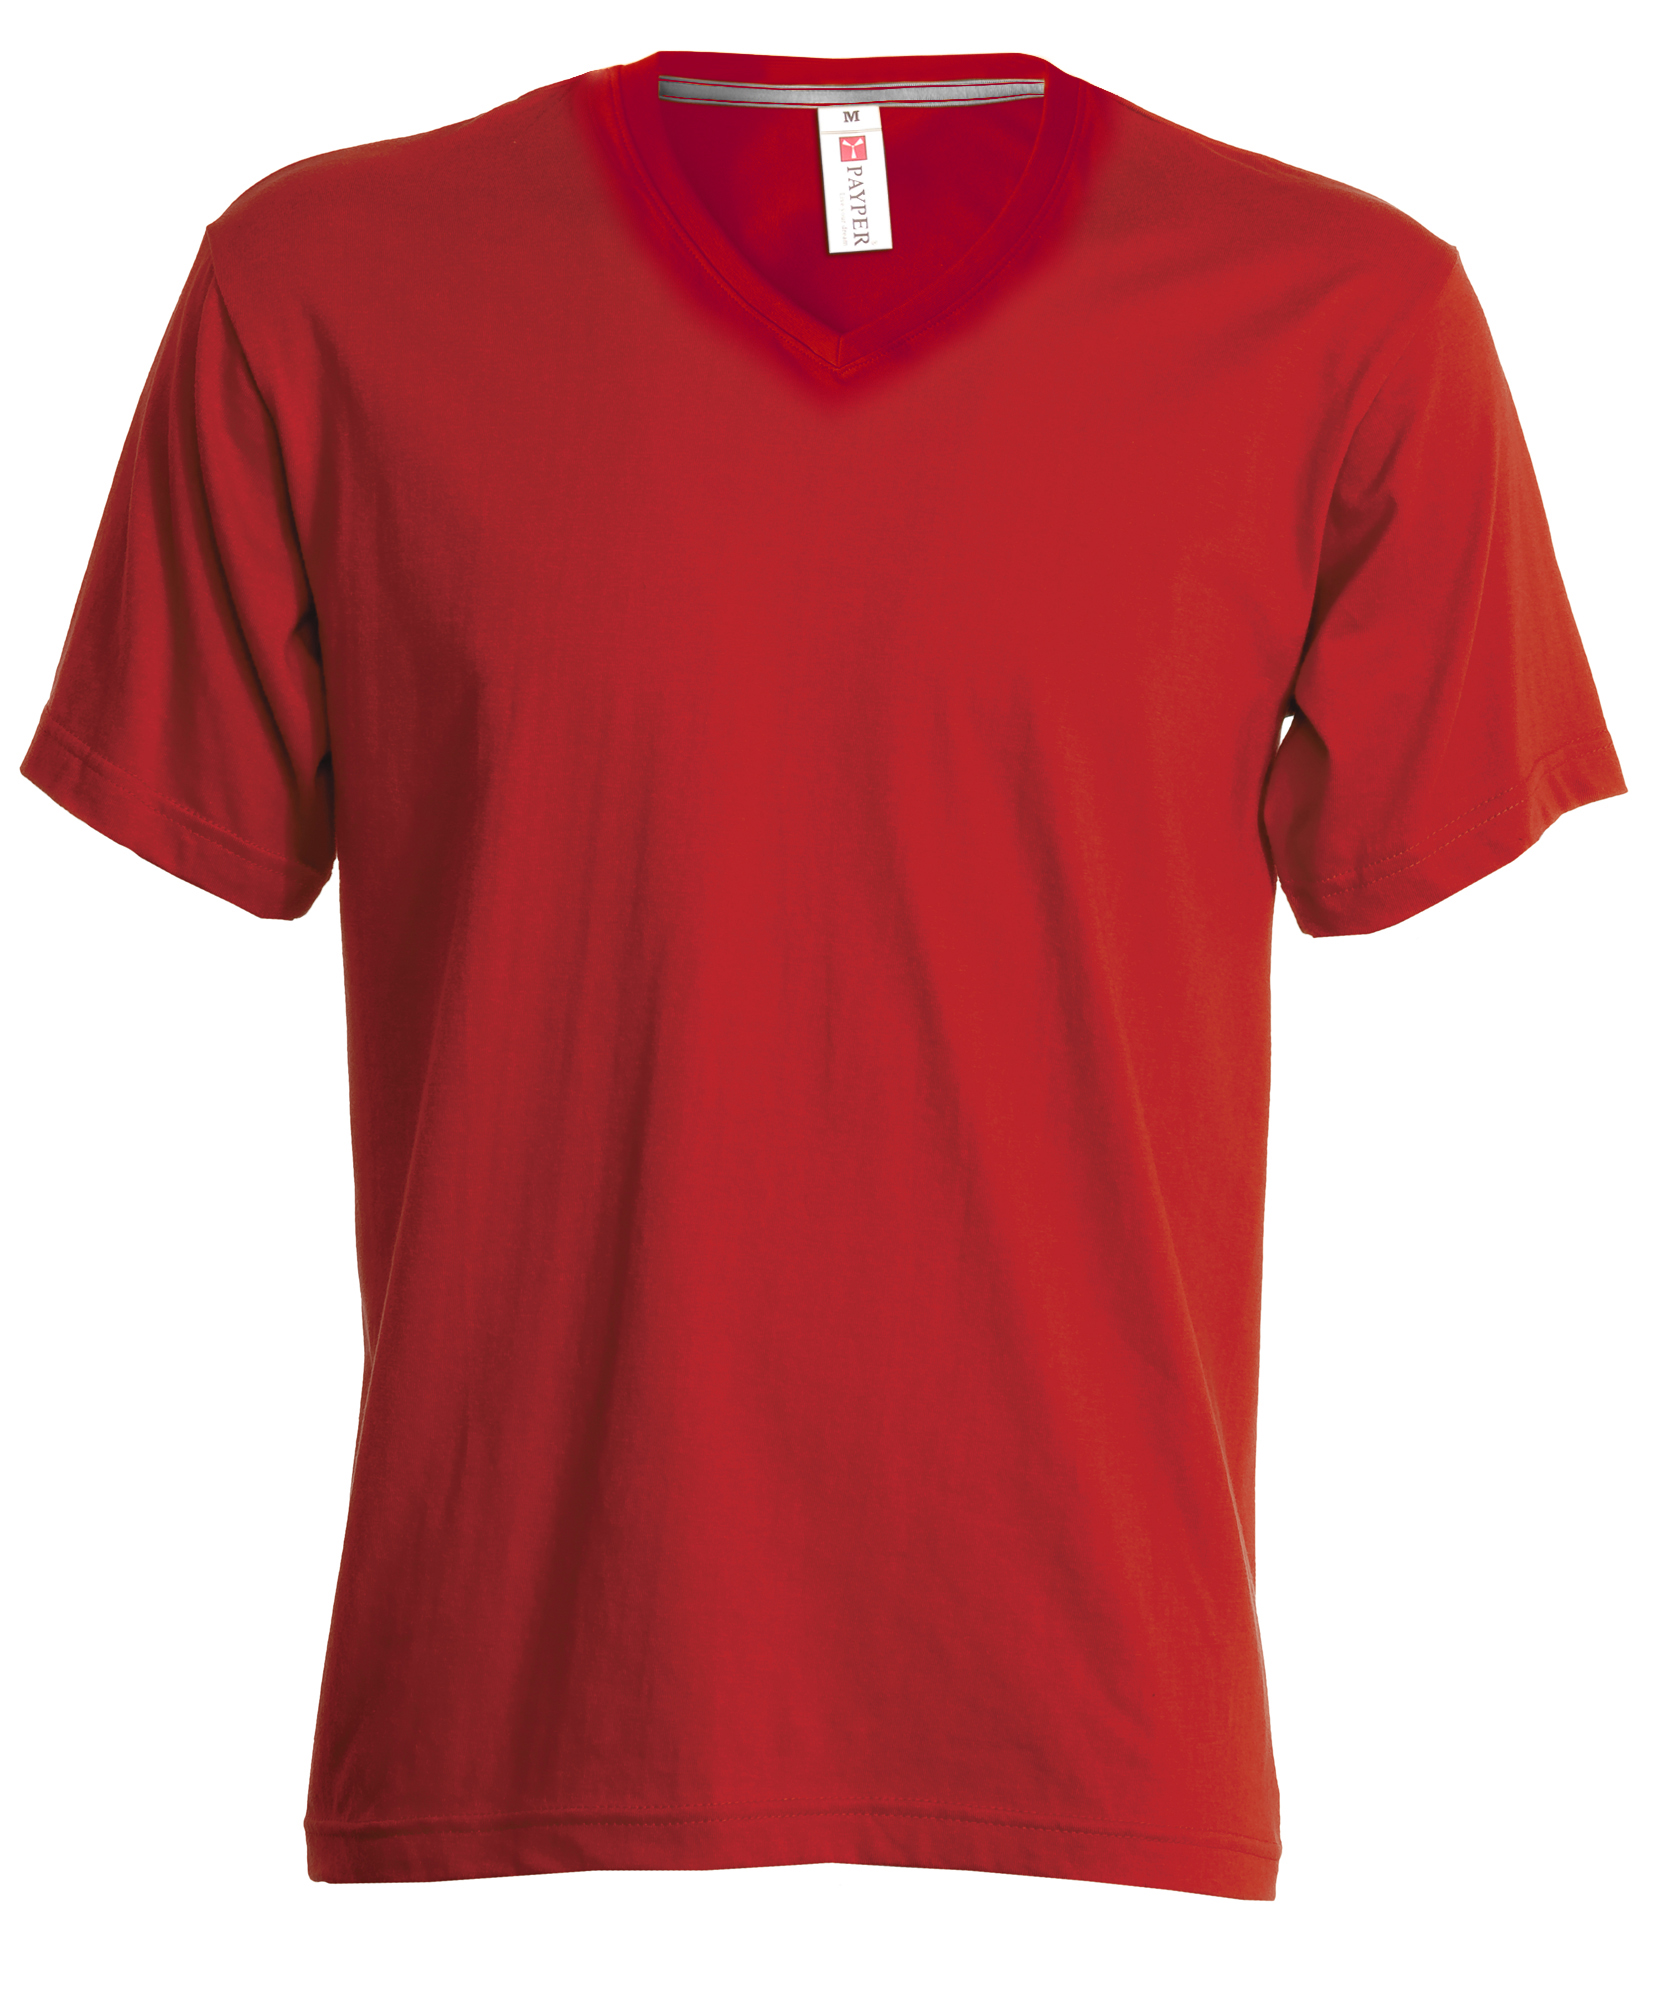 Tshirt V NECK - ROUGE imprimé et personnalisé pour votre entreprise ...